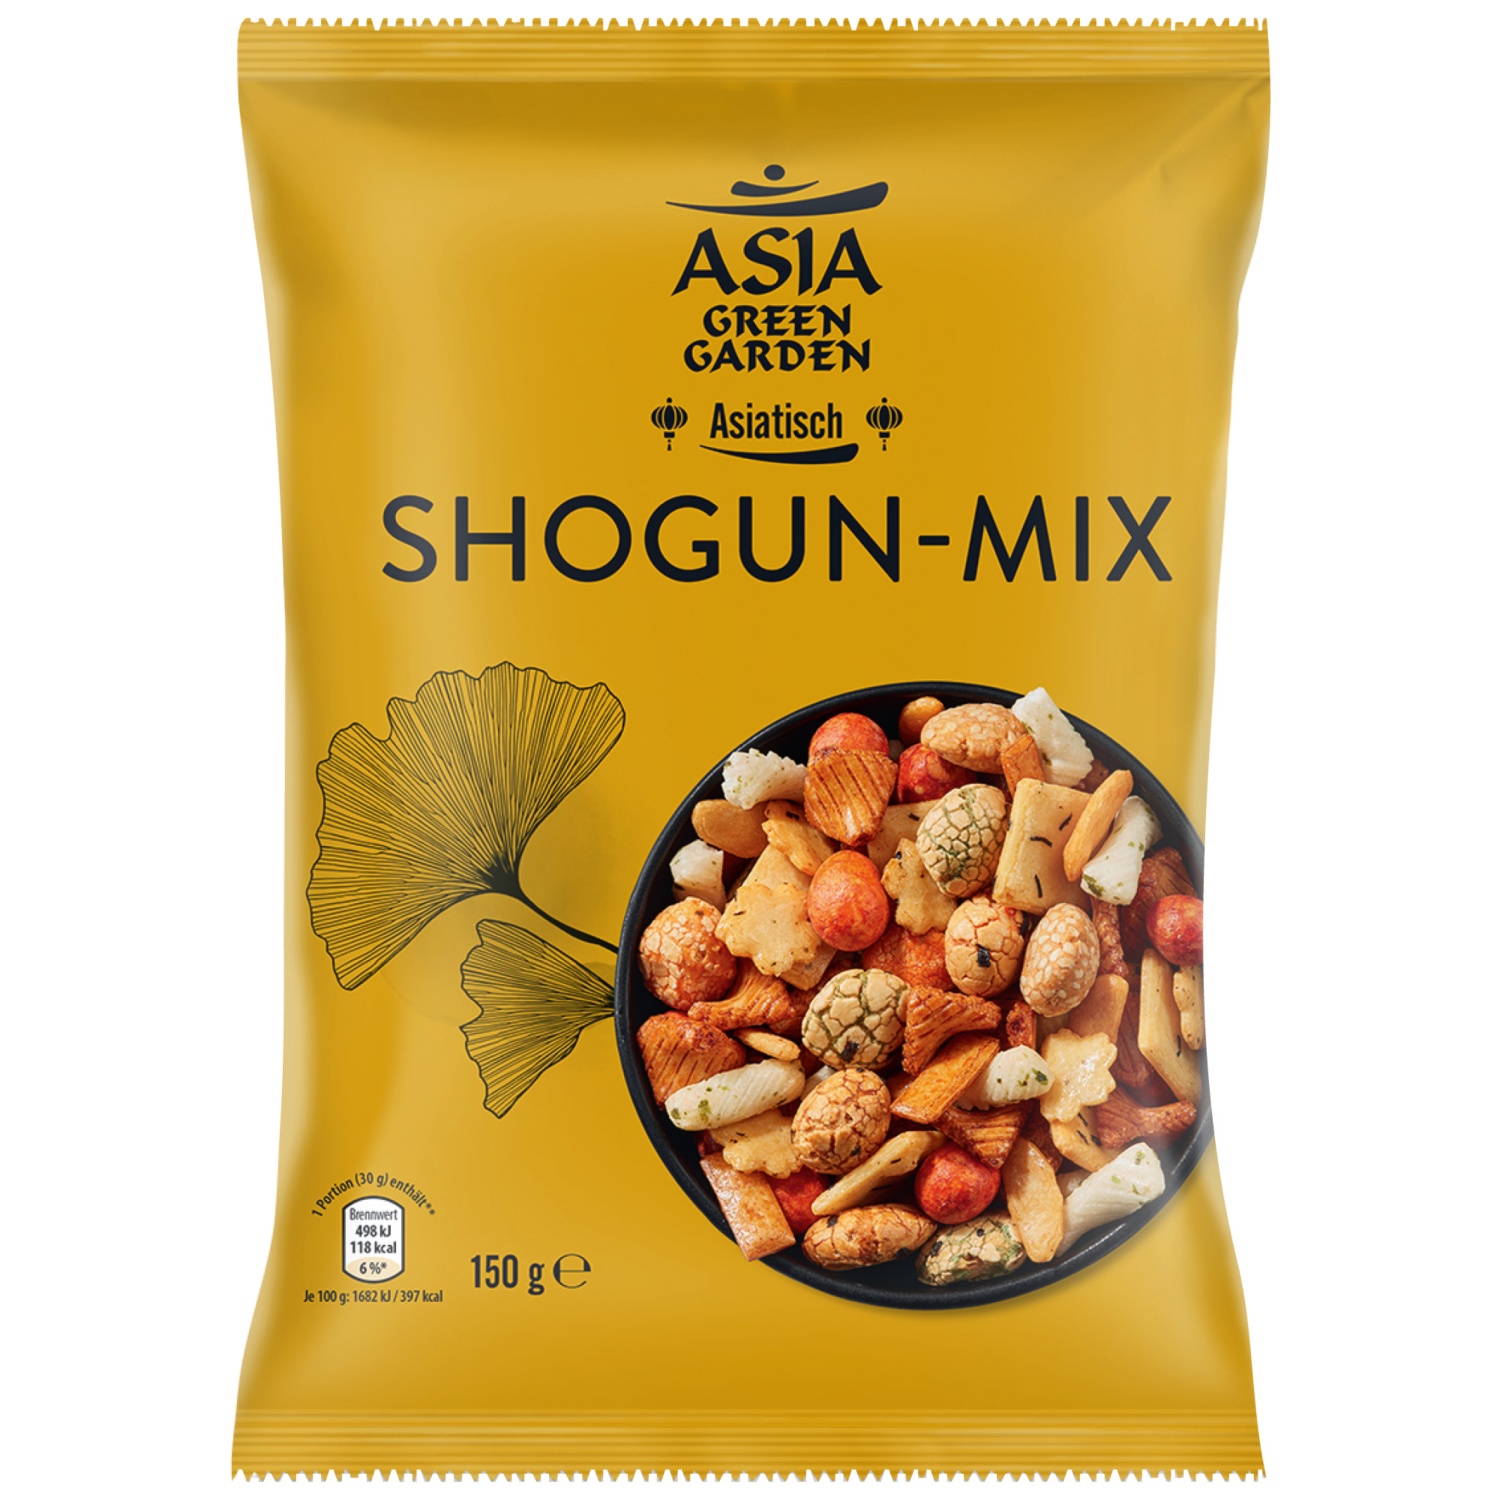 ASIA GREEN GARDEN Asia-Snack-Mix, Shogun